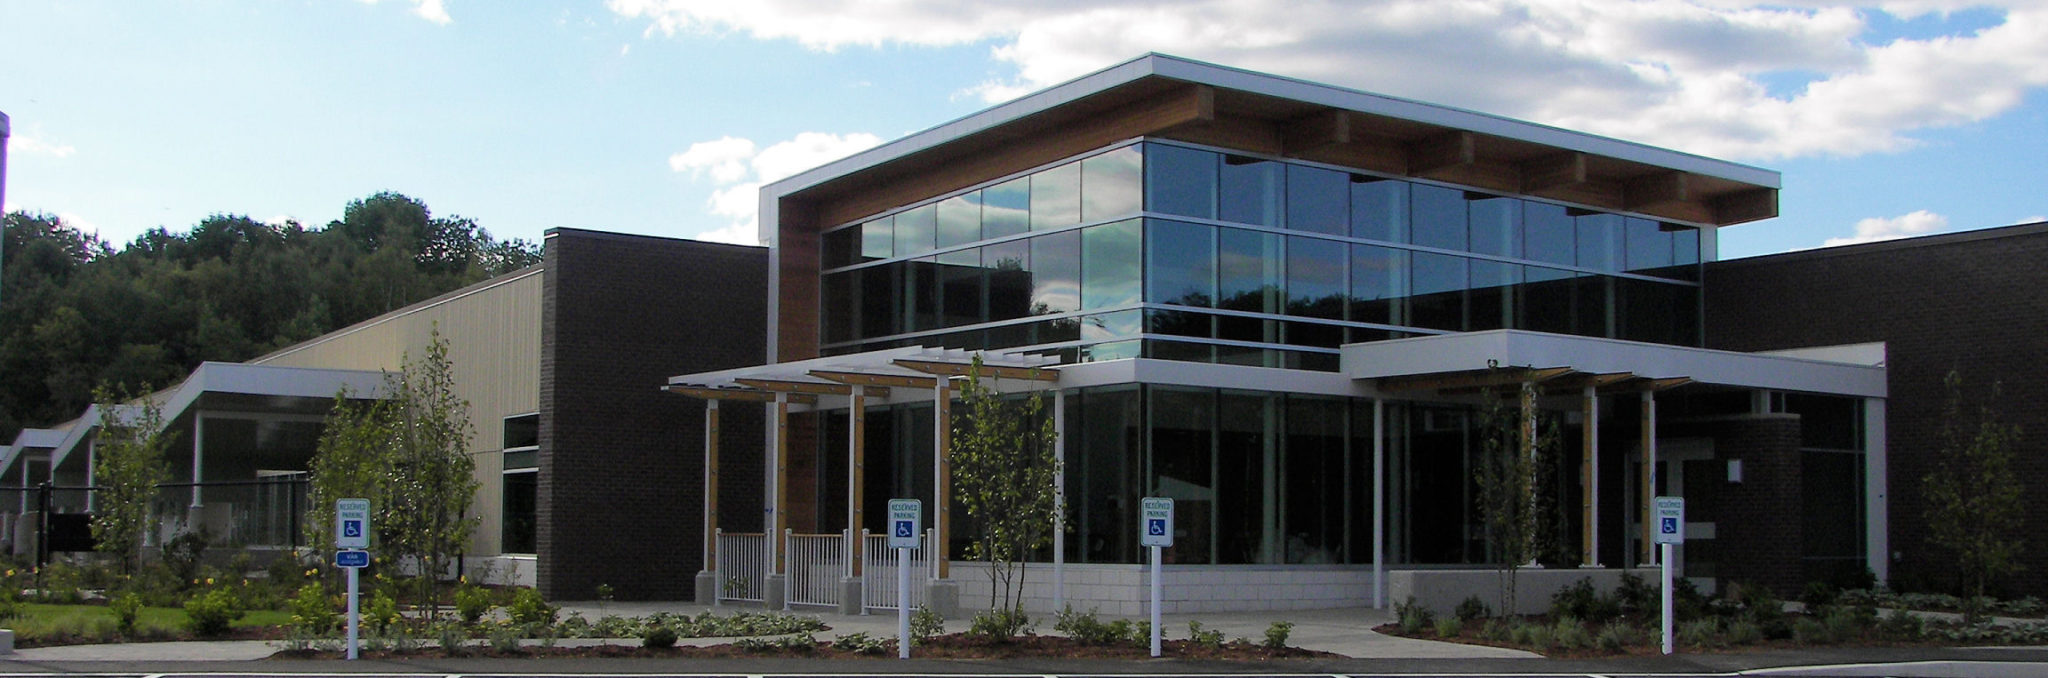 exterior photo of educare school building